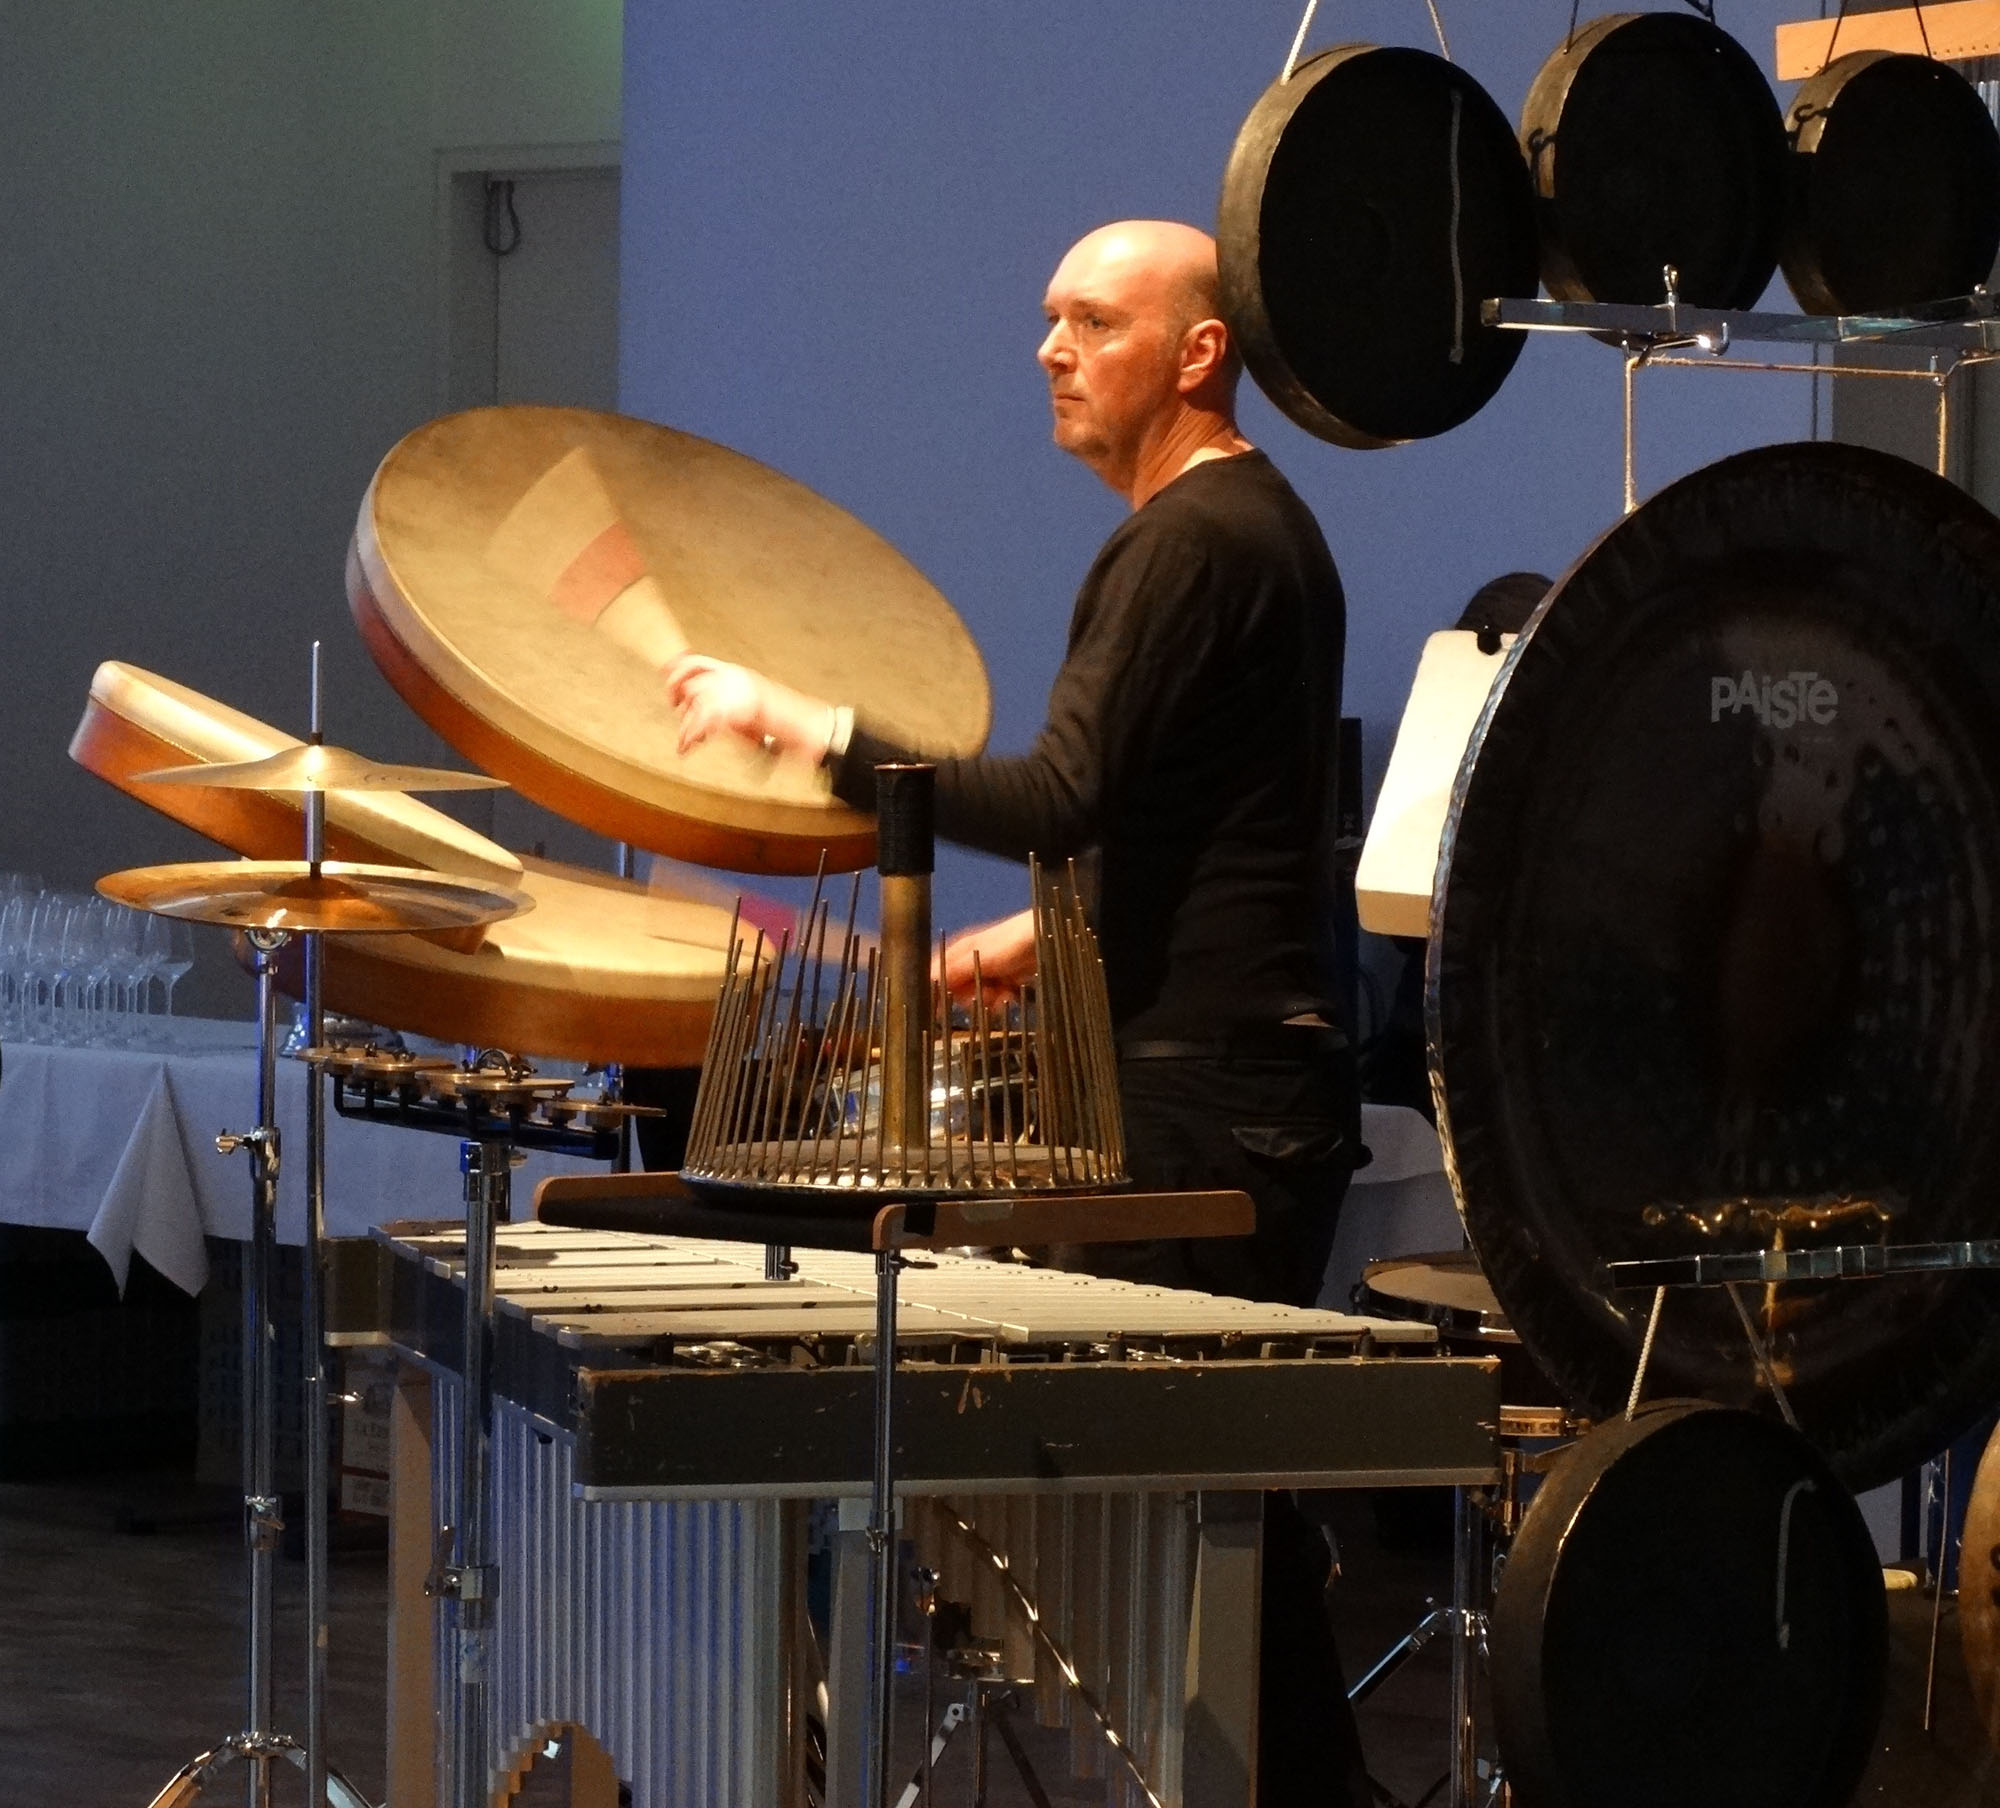 SPACES 2014. Festival director Jürgen Grözinger on drums